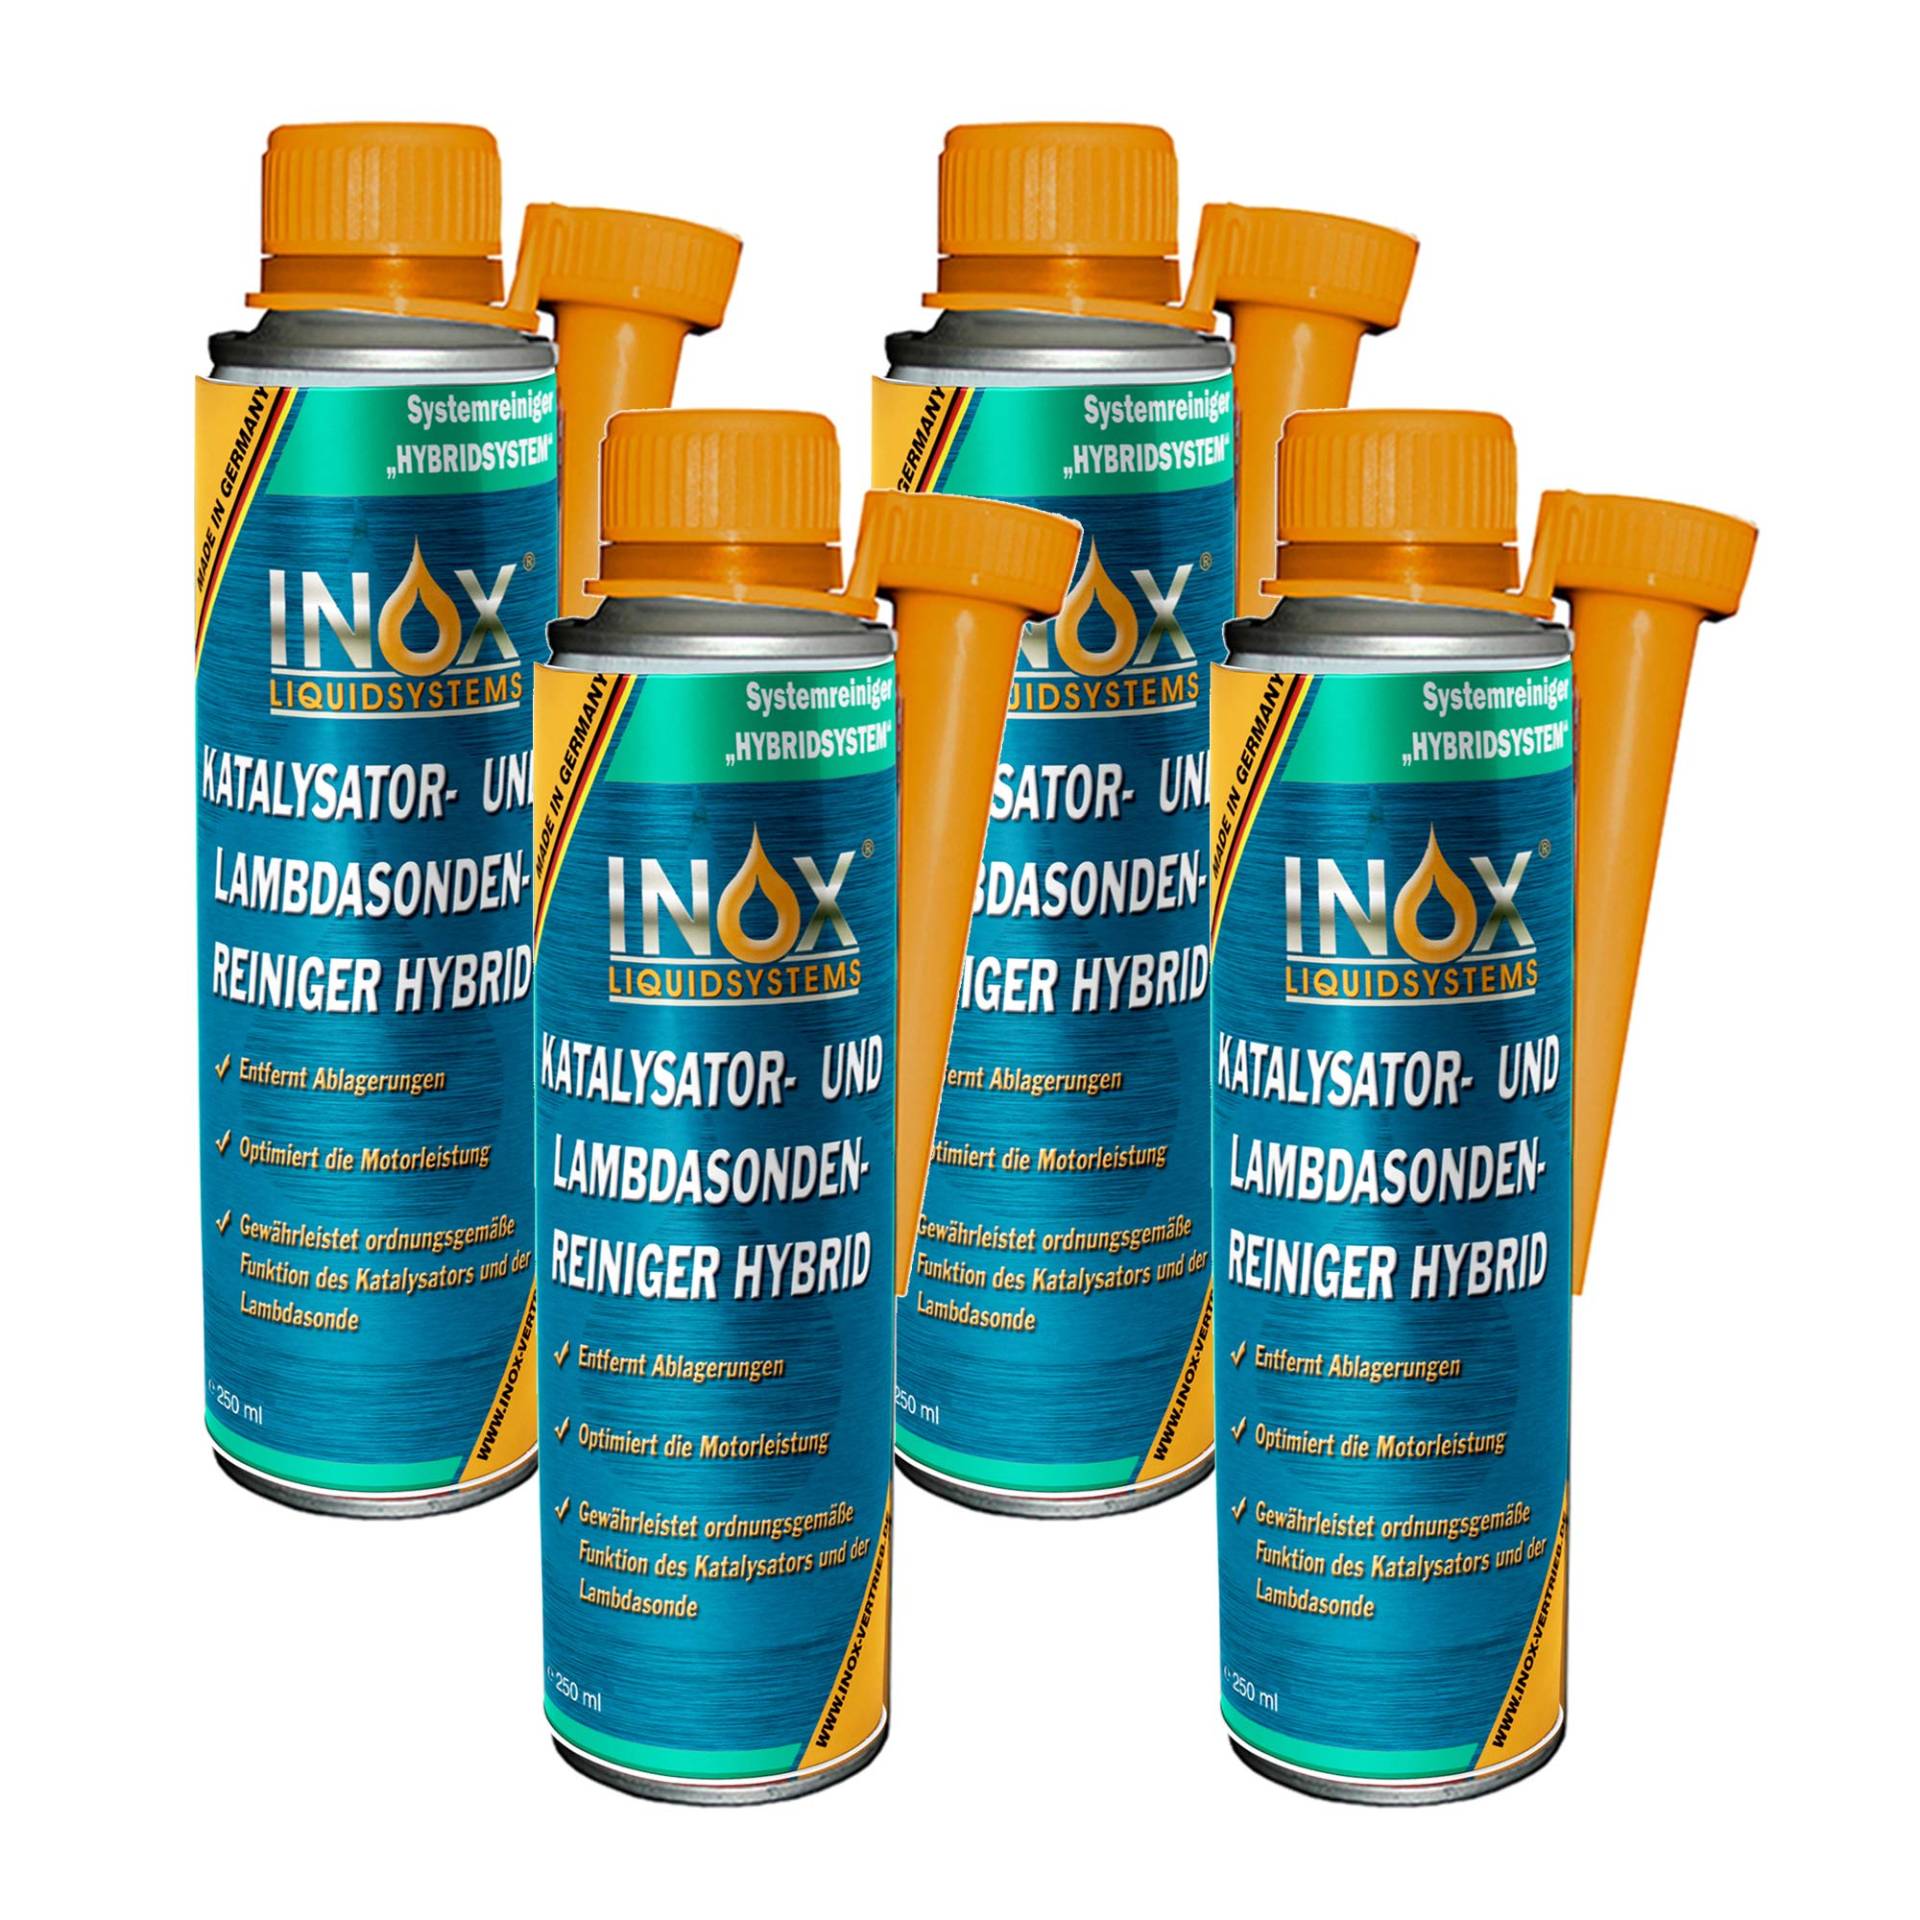 INOX® Katalysator- und Lambdasondenreiniger Hybrid, 4 x 250 ml von INOX-LIQUIDSYSTEMS